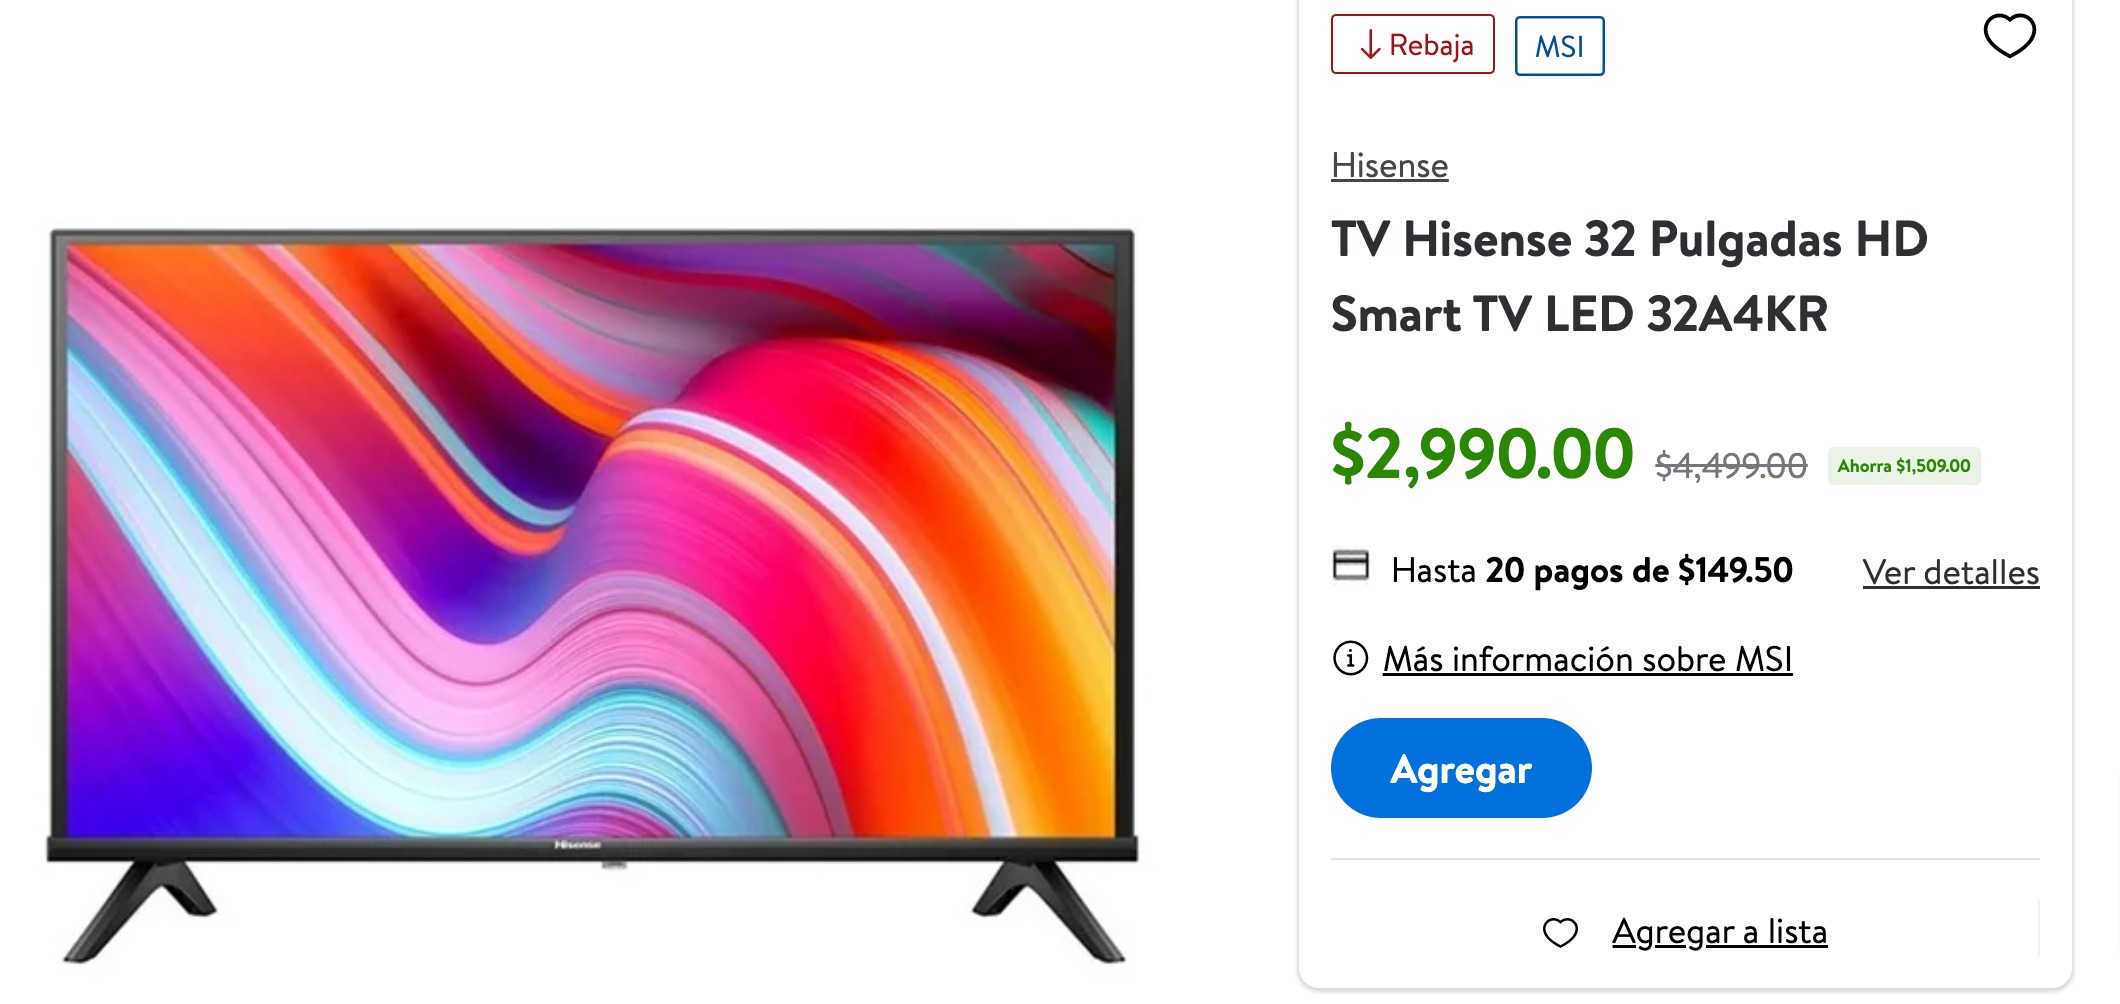 Pantalla Hisense de 32 pulgadas, una smart TV a 150 pesos al mes